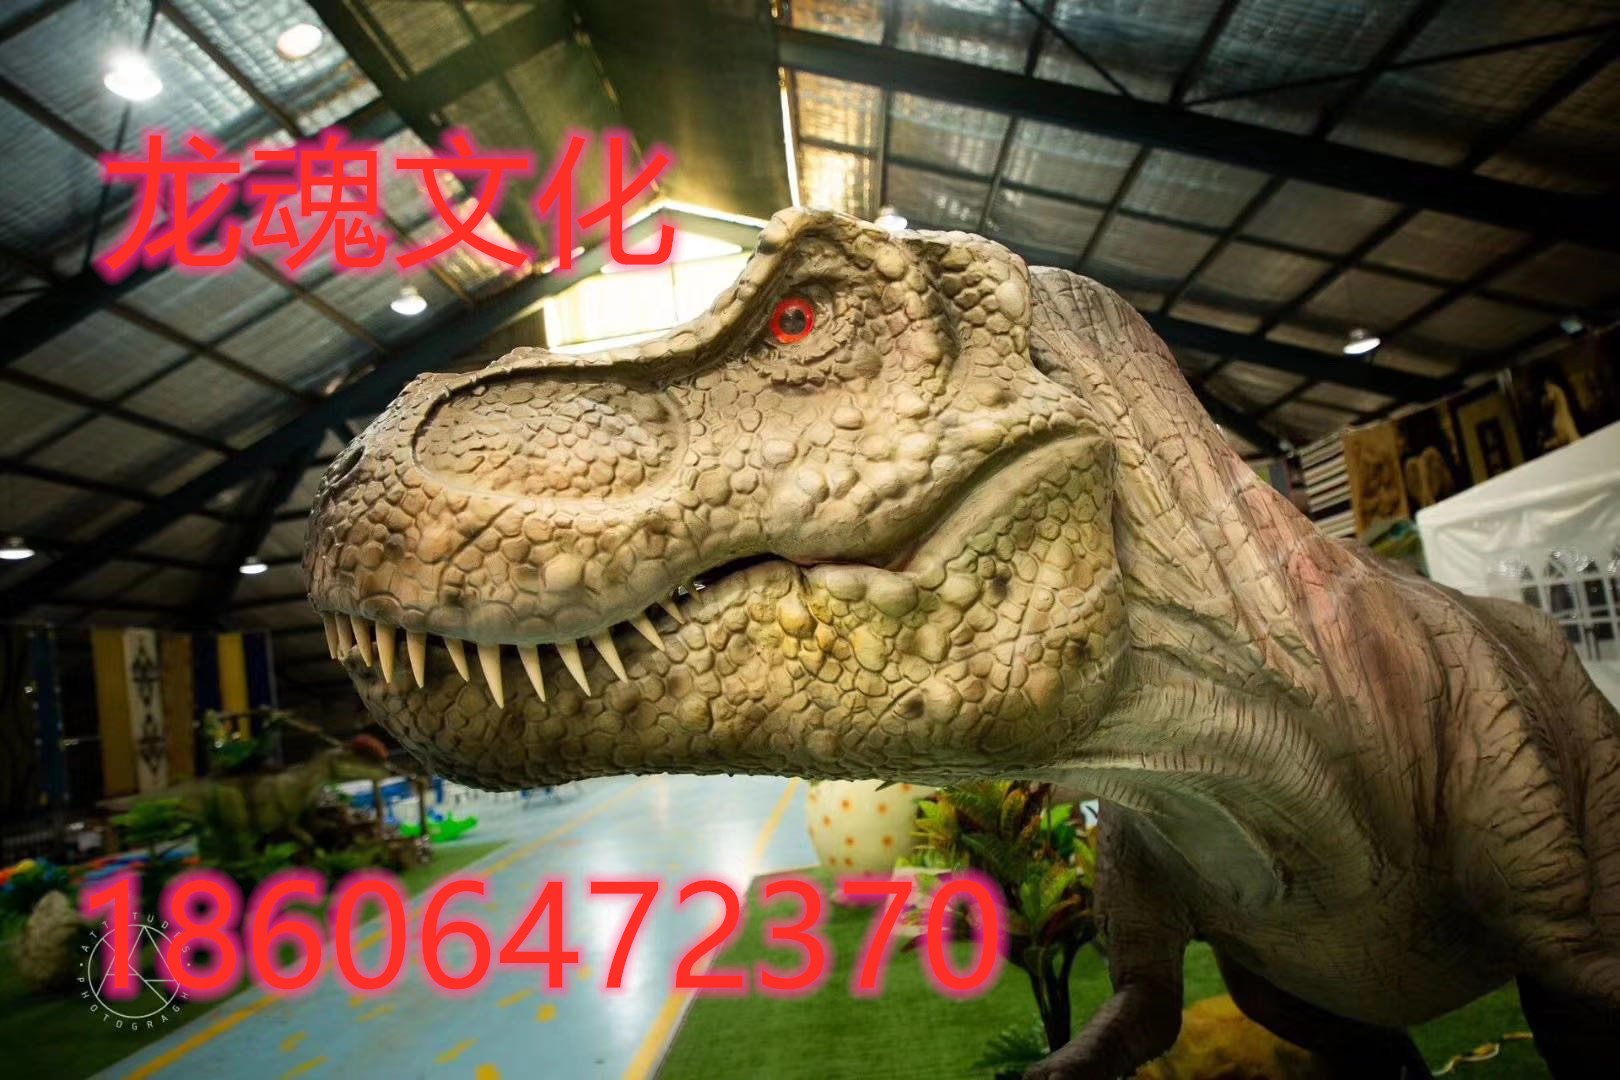 上海市仿真恐龙出租厂家杭州专业仿真恐龙出售租赁出租 仿真恐龙出租